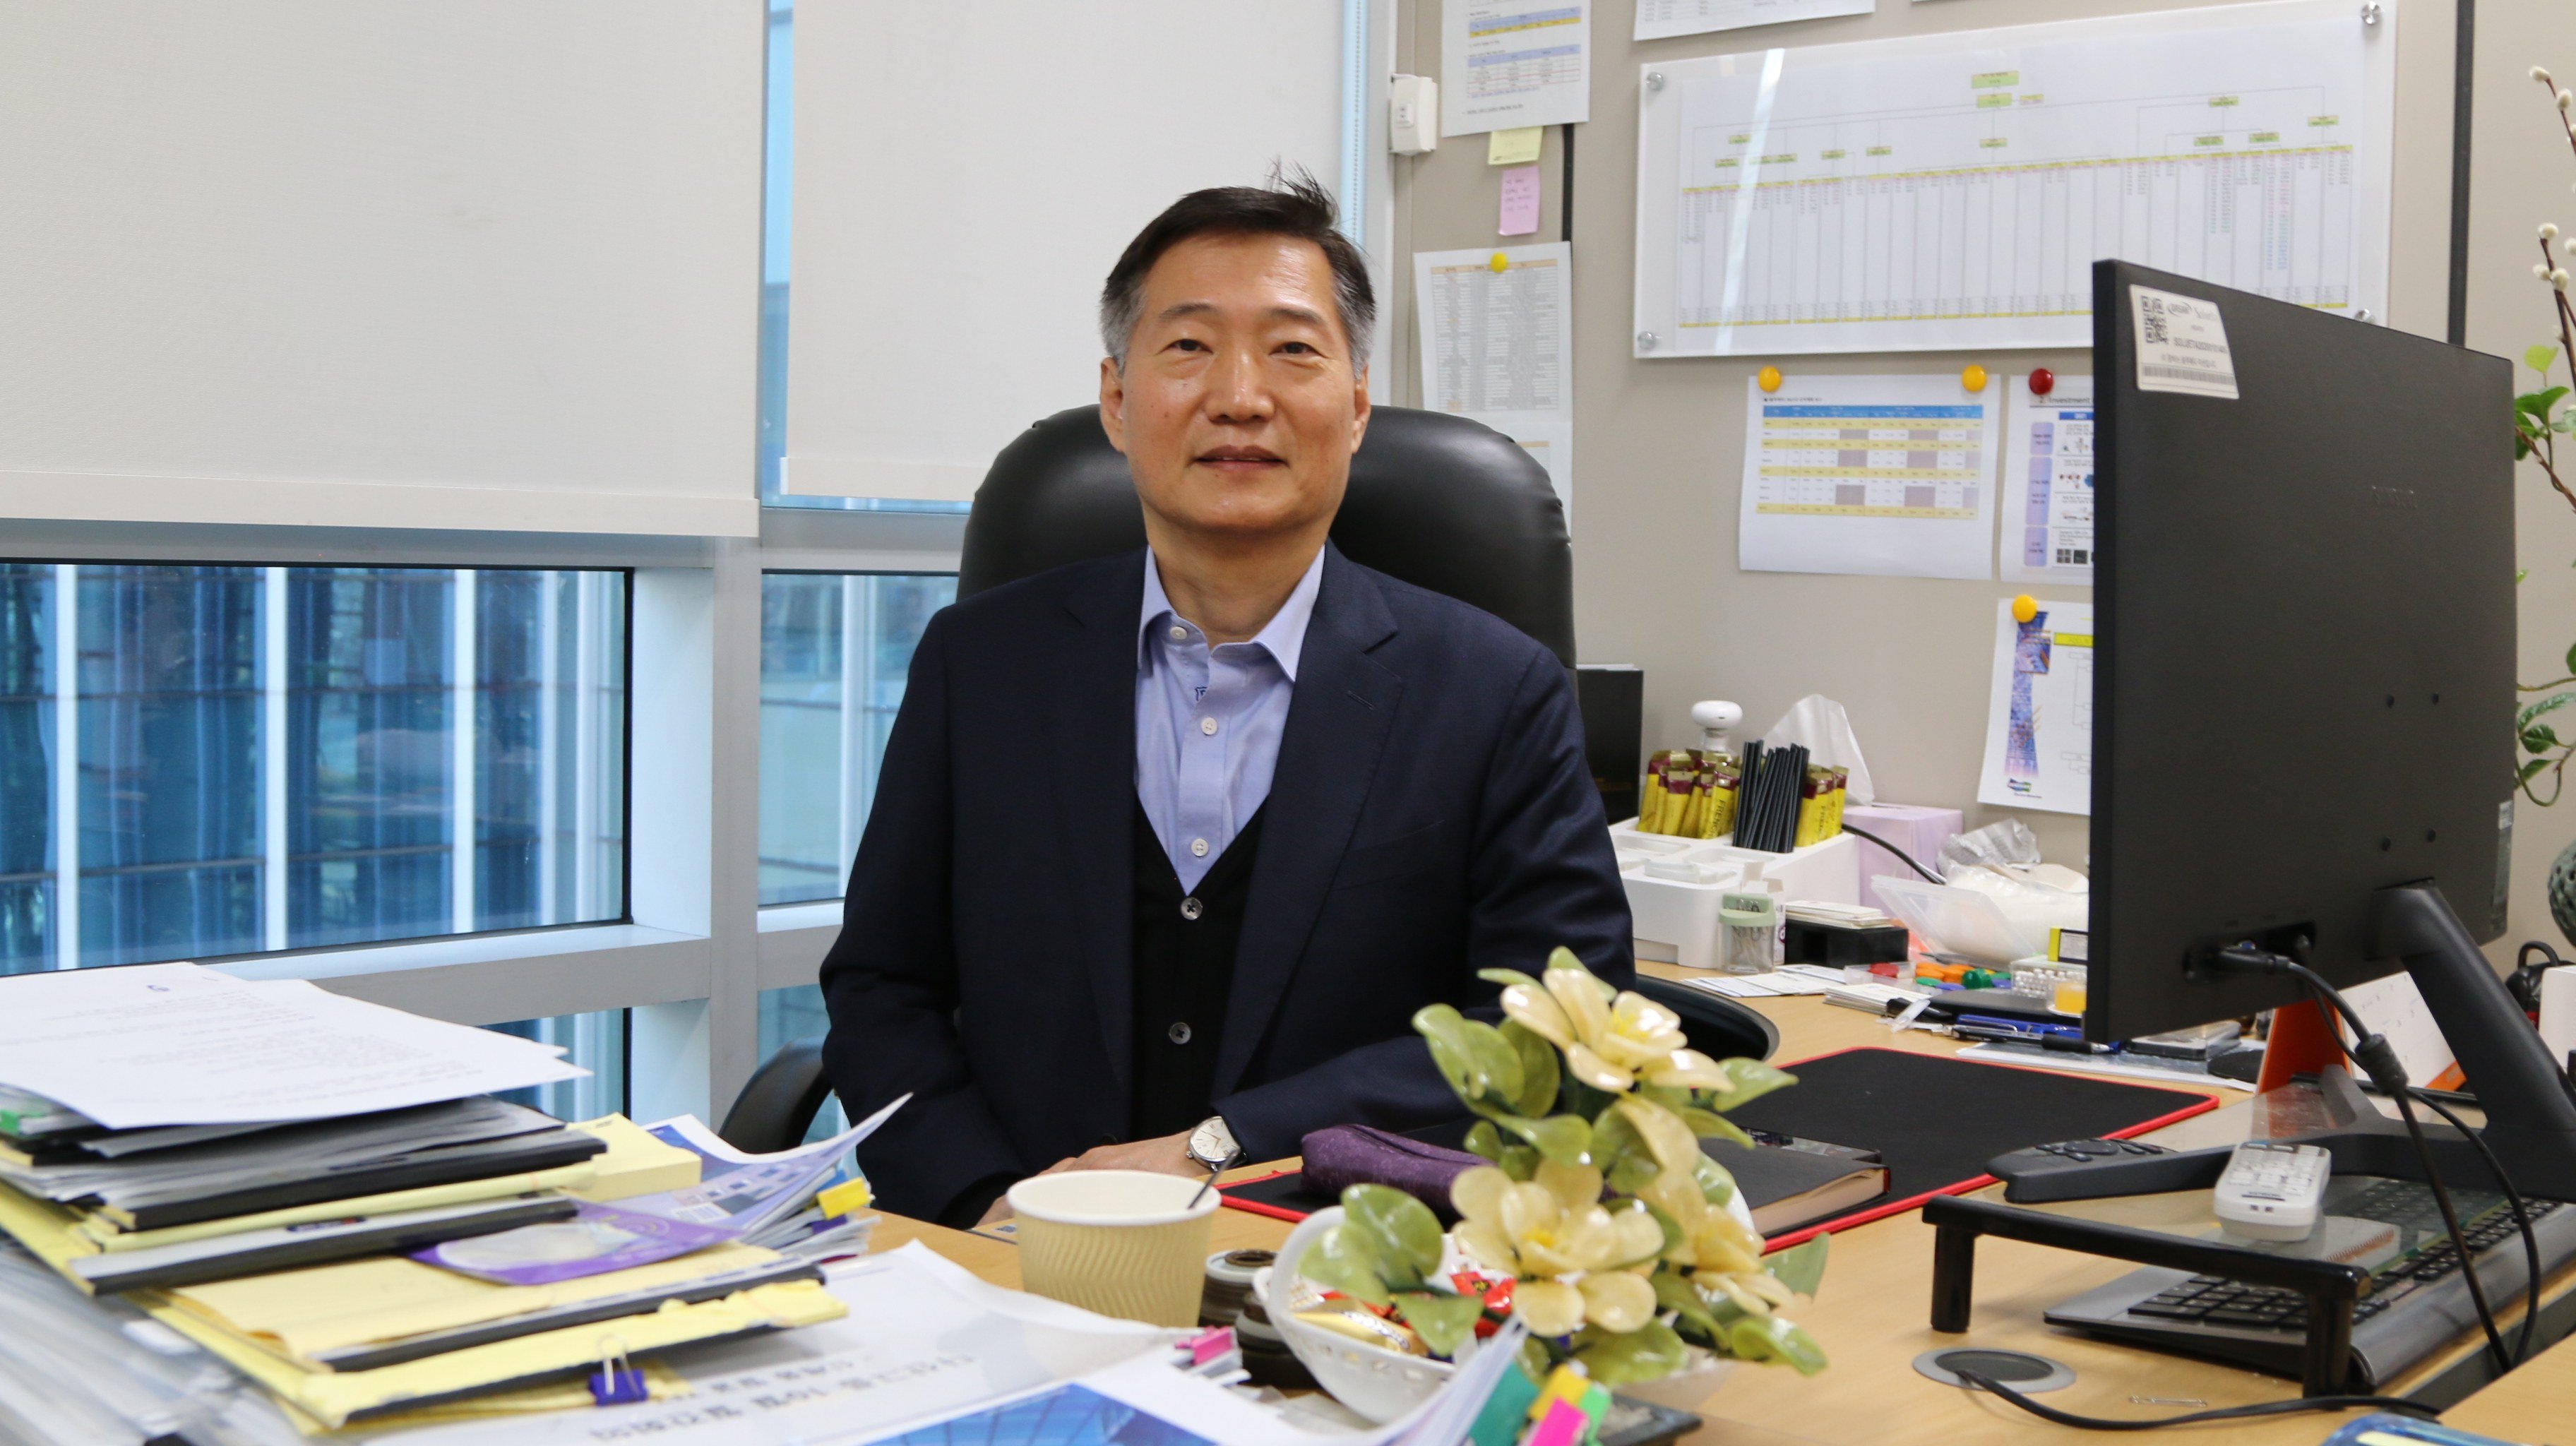 Lee Sang-hoon, CEO